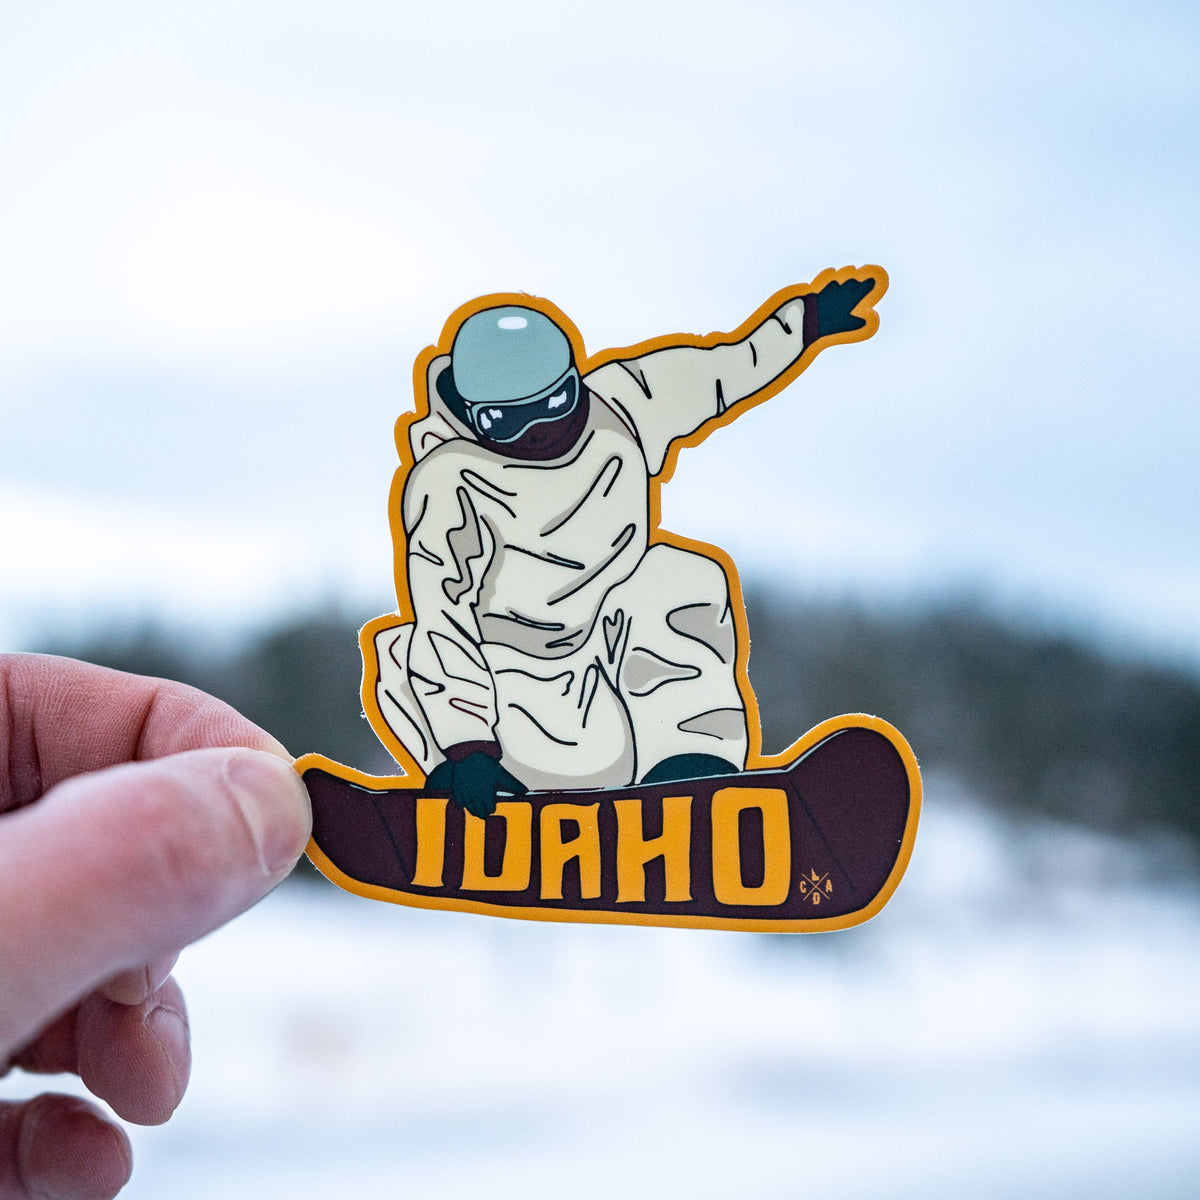 Idaho Snowboarder Sticker